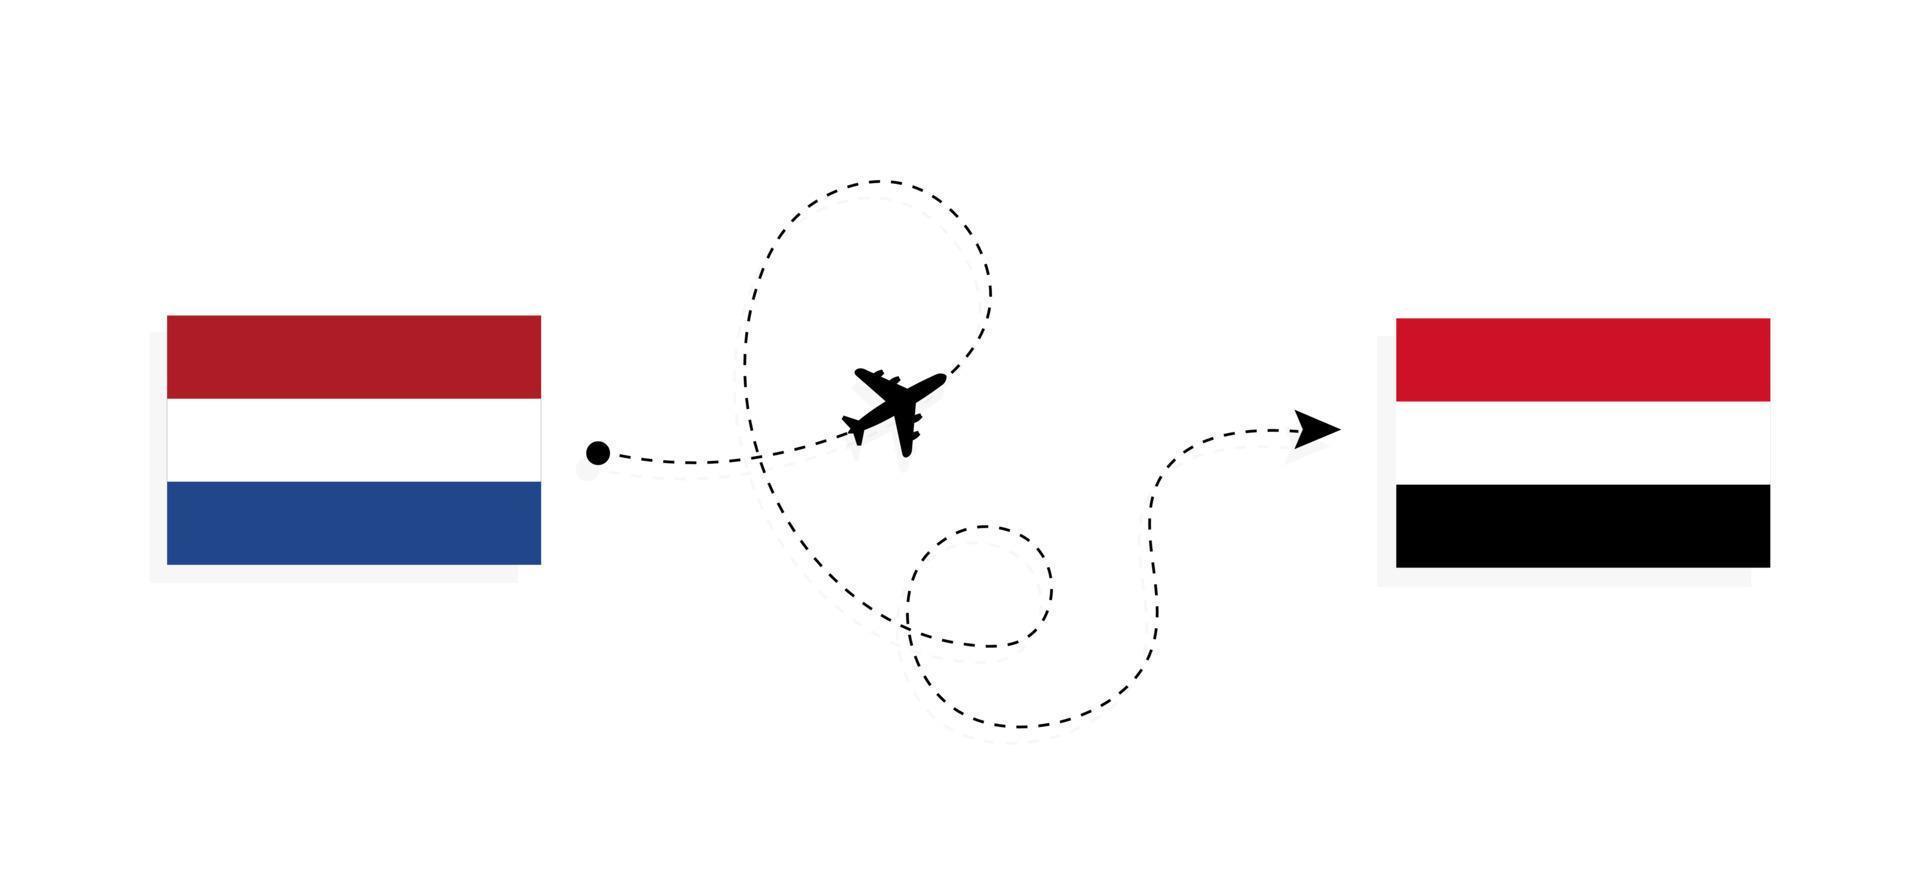 flyg och resor från Nederländerna till Egypten med passagerarflygplan vektor